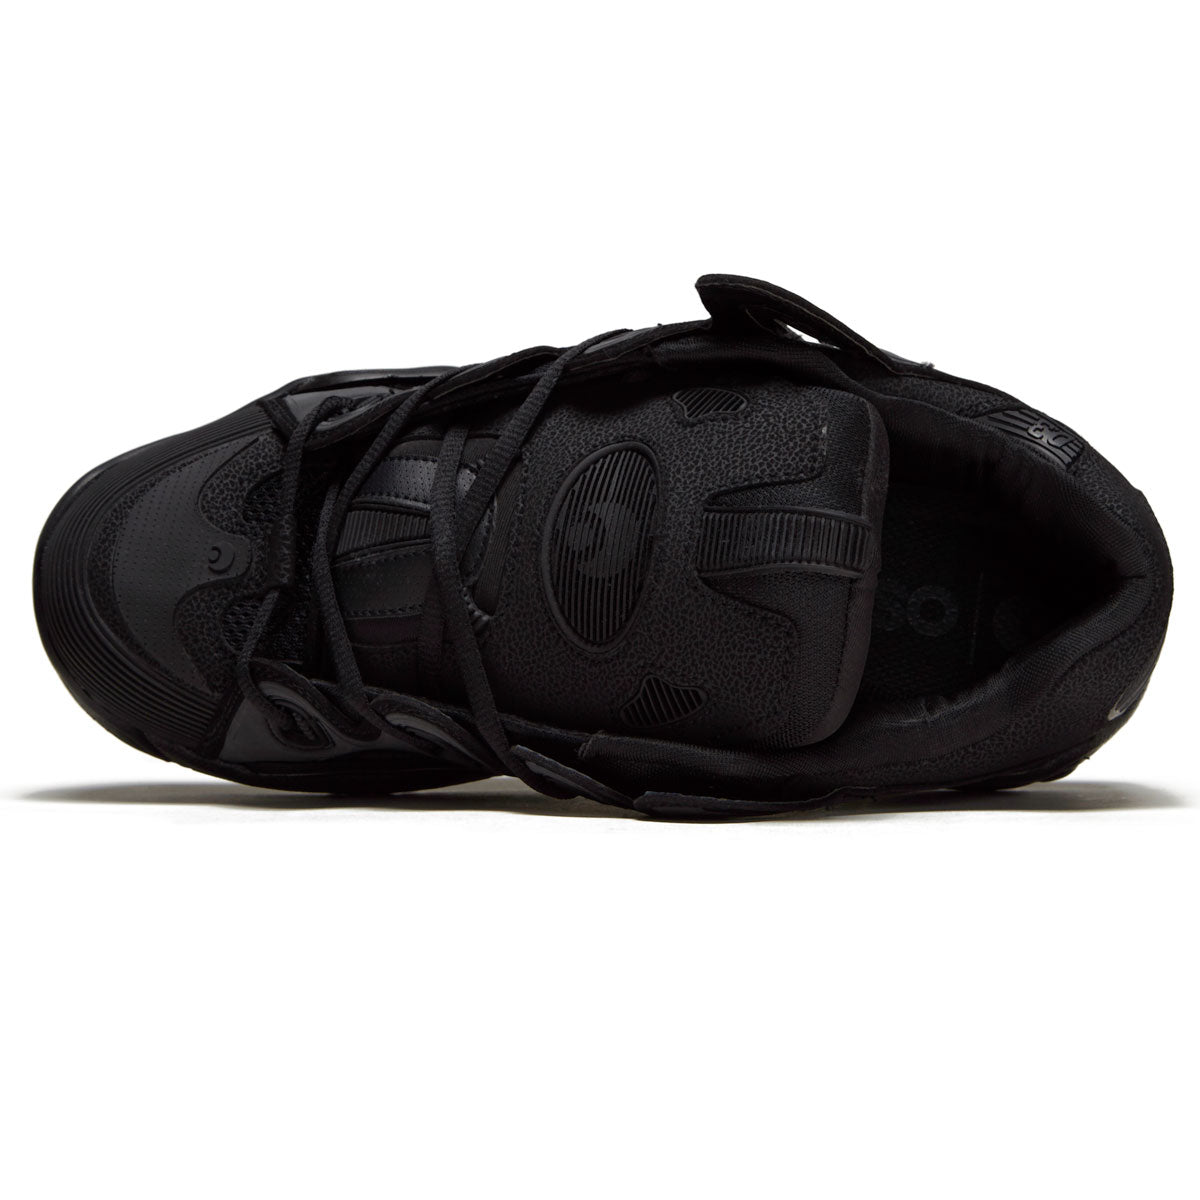 Osiris D3 2001 Shoes - Black/Black/Black image 3